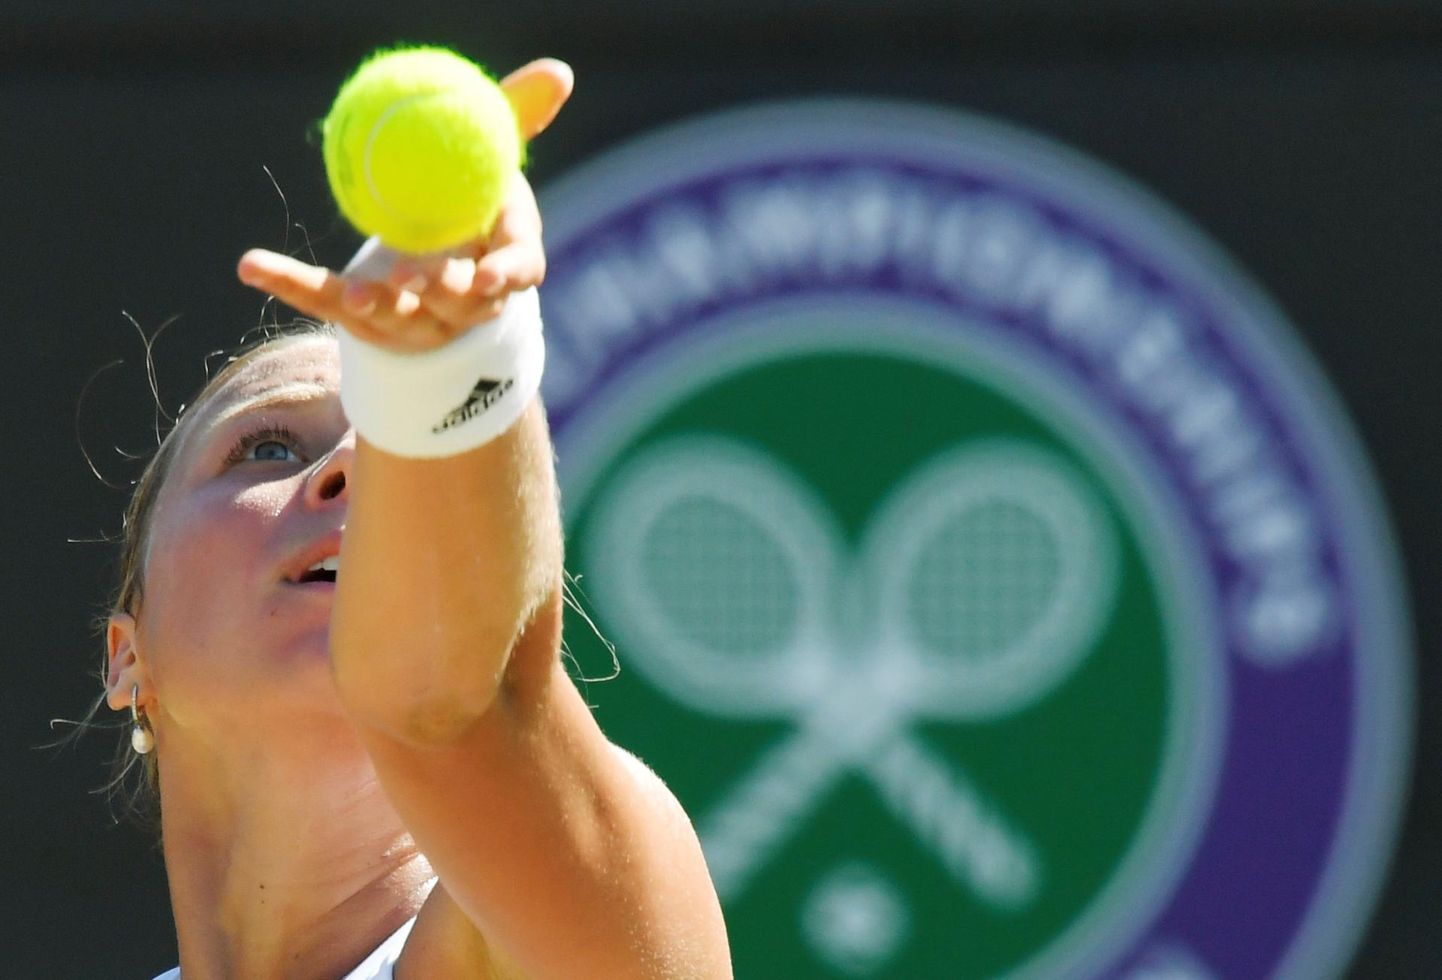 Aasta eest jõudis Anett Kontaveit Wimbledonis 1/8-finaali, kus kaotas dramaatiliselt Caroline Wozniackile. FOTO: Toby Melville/Reuters/Scanpix